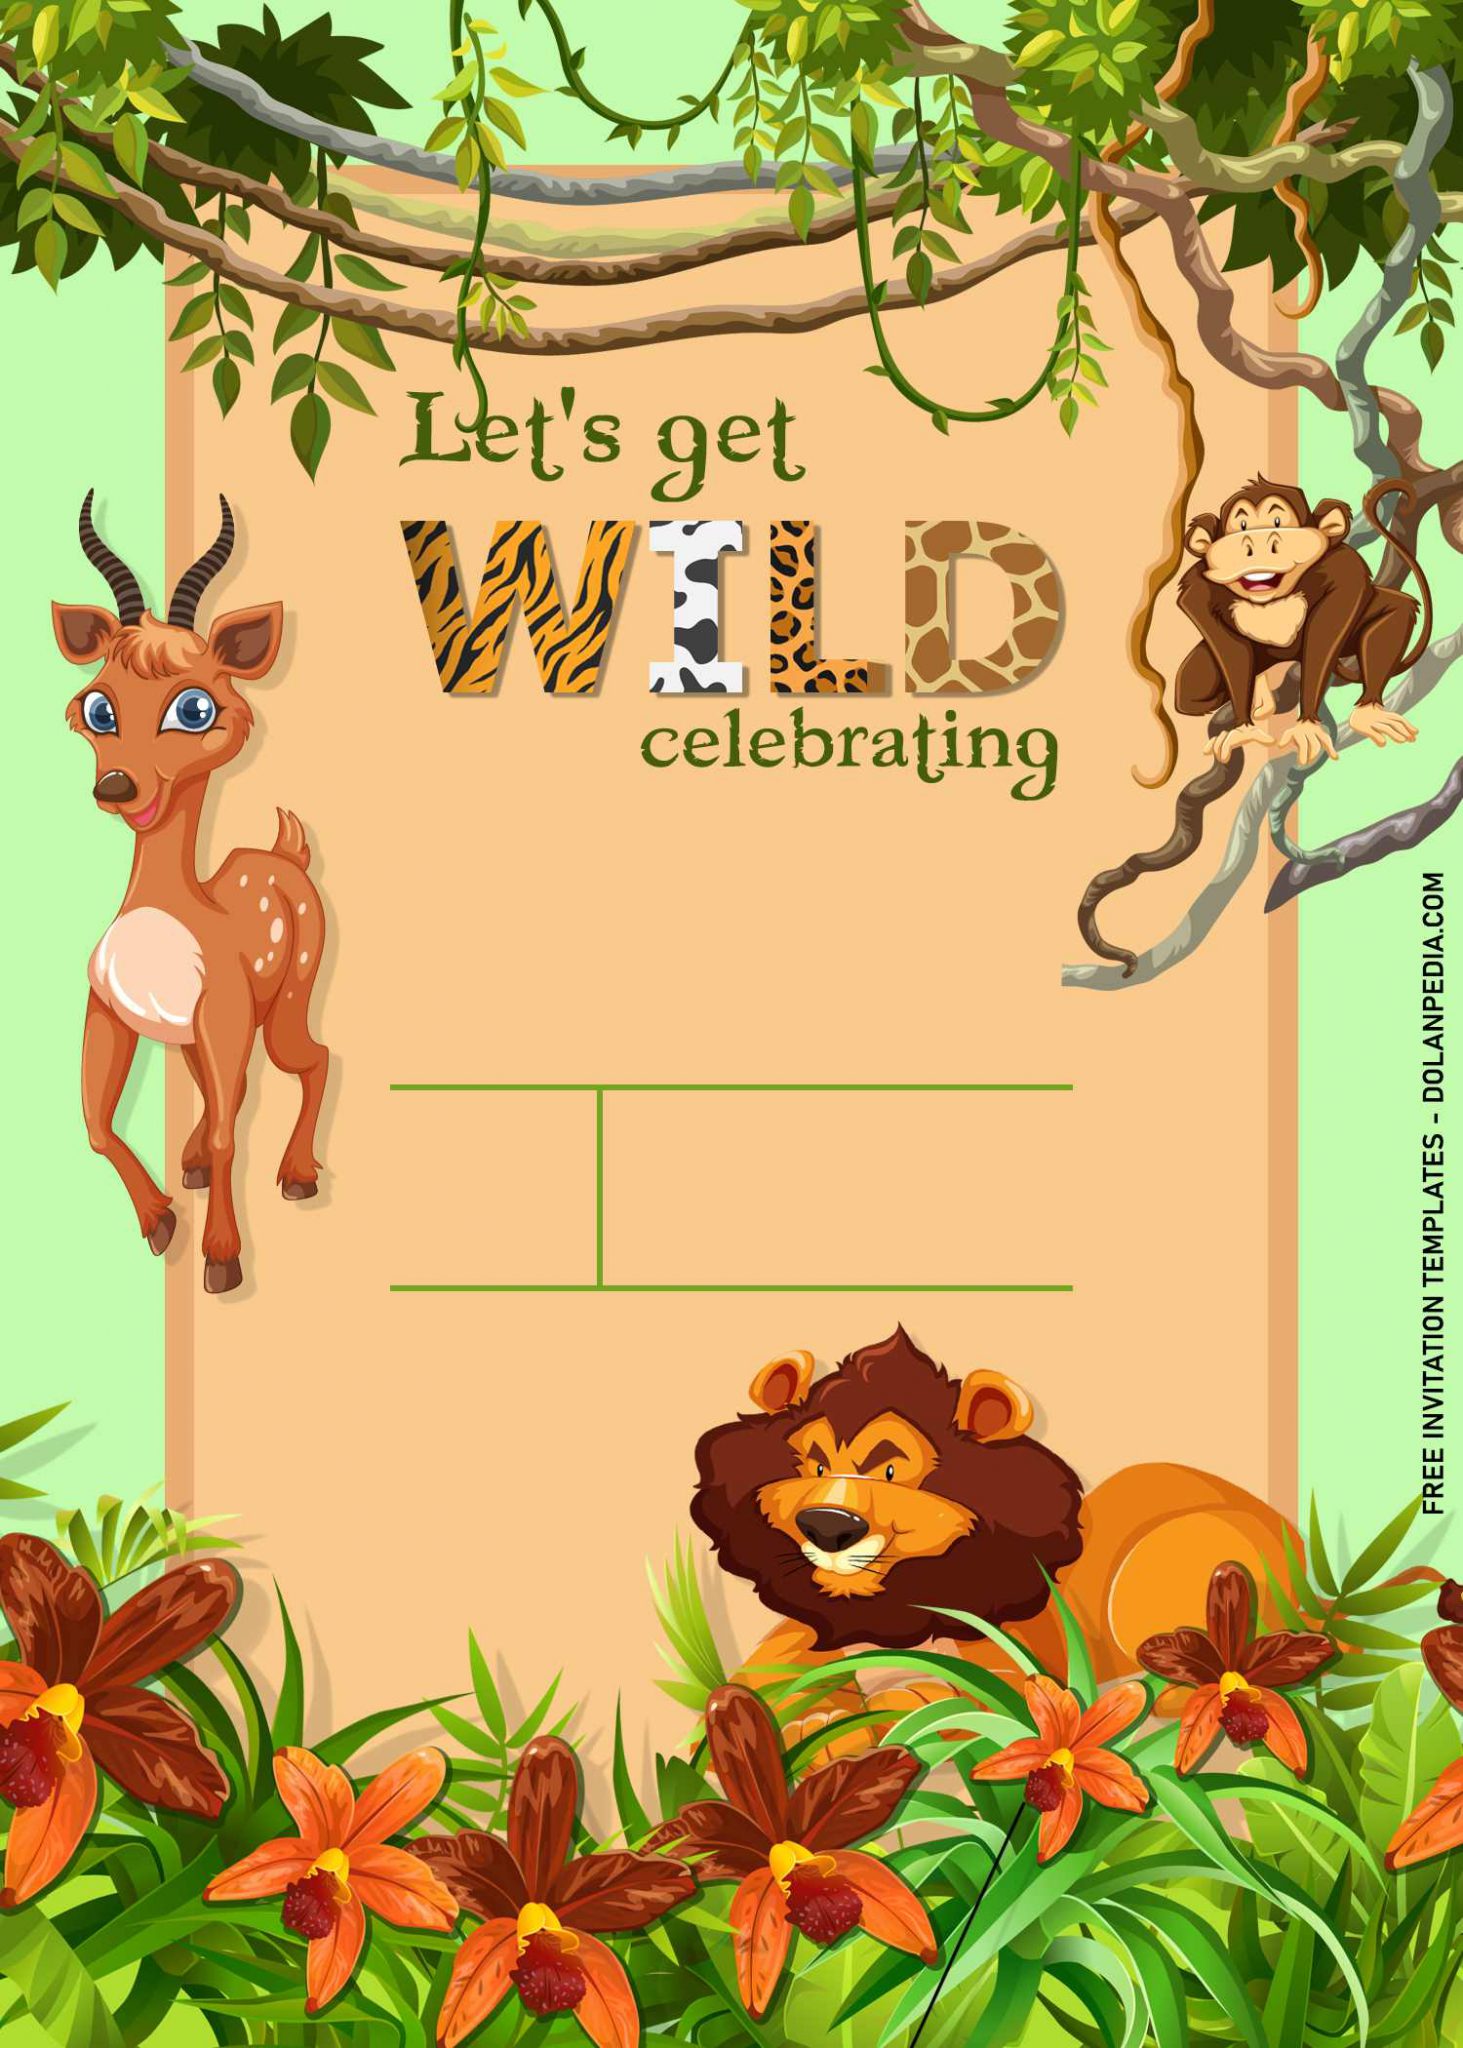 jungle safari invitation card